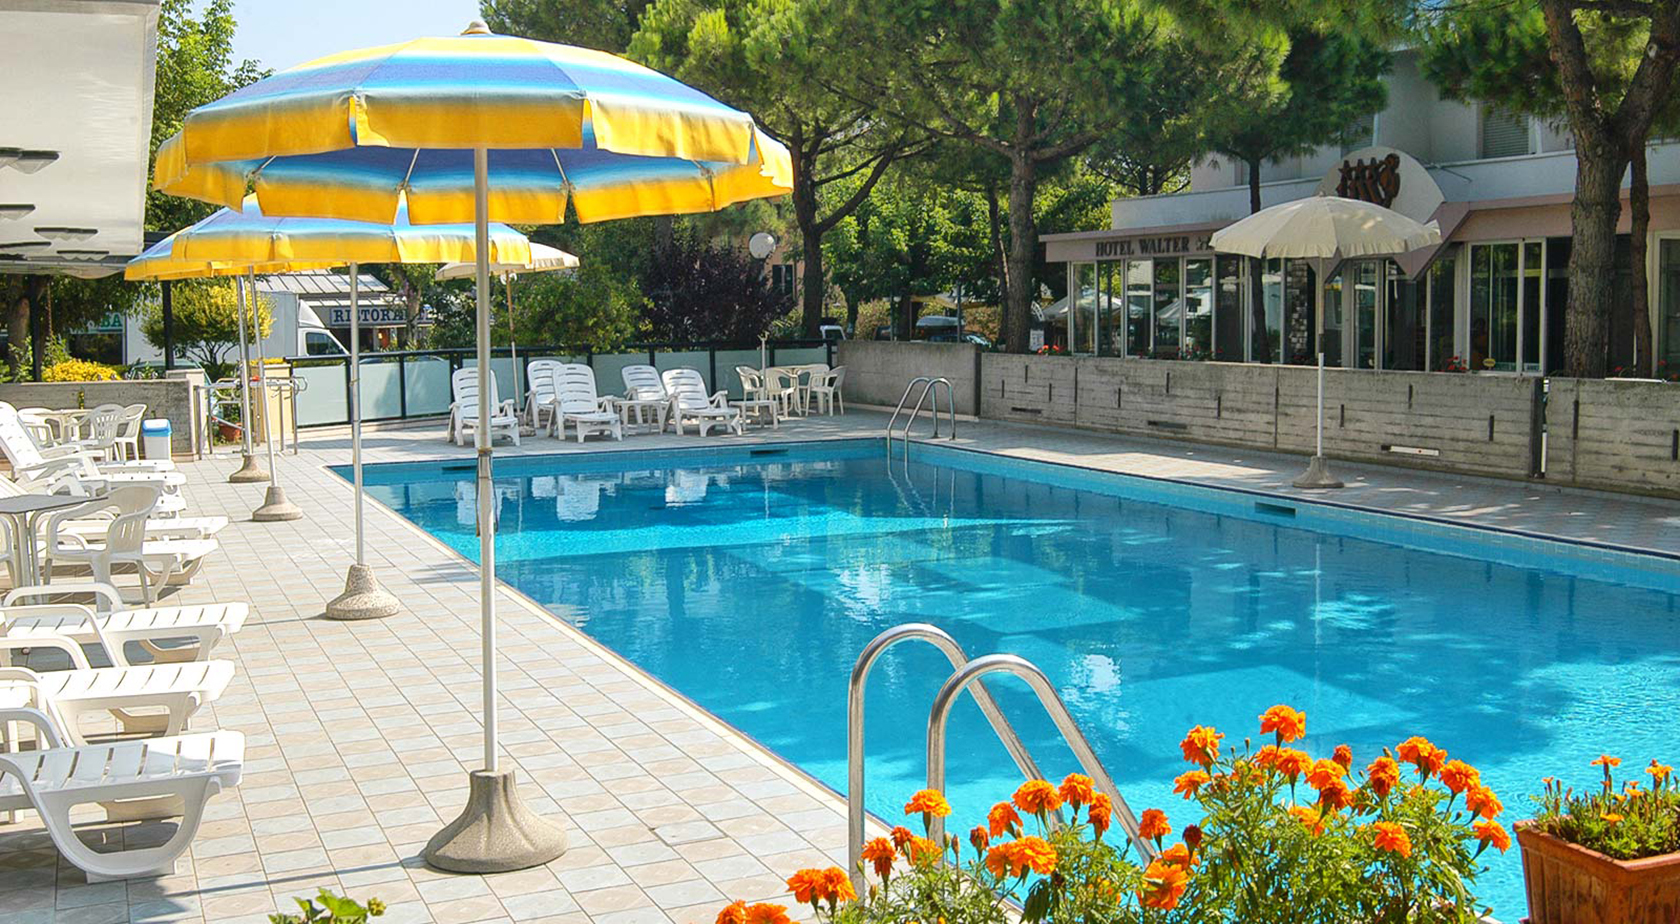 la piscina hotel simon hotel per le vacanze delle famiglie con bambini in romagna